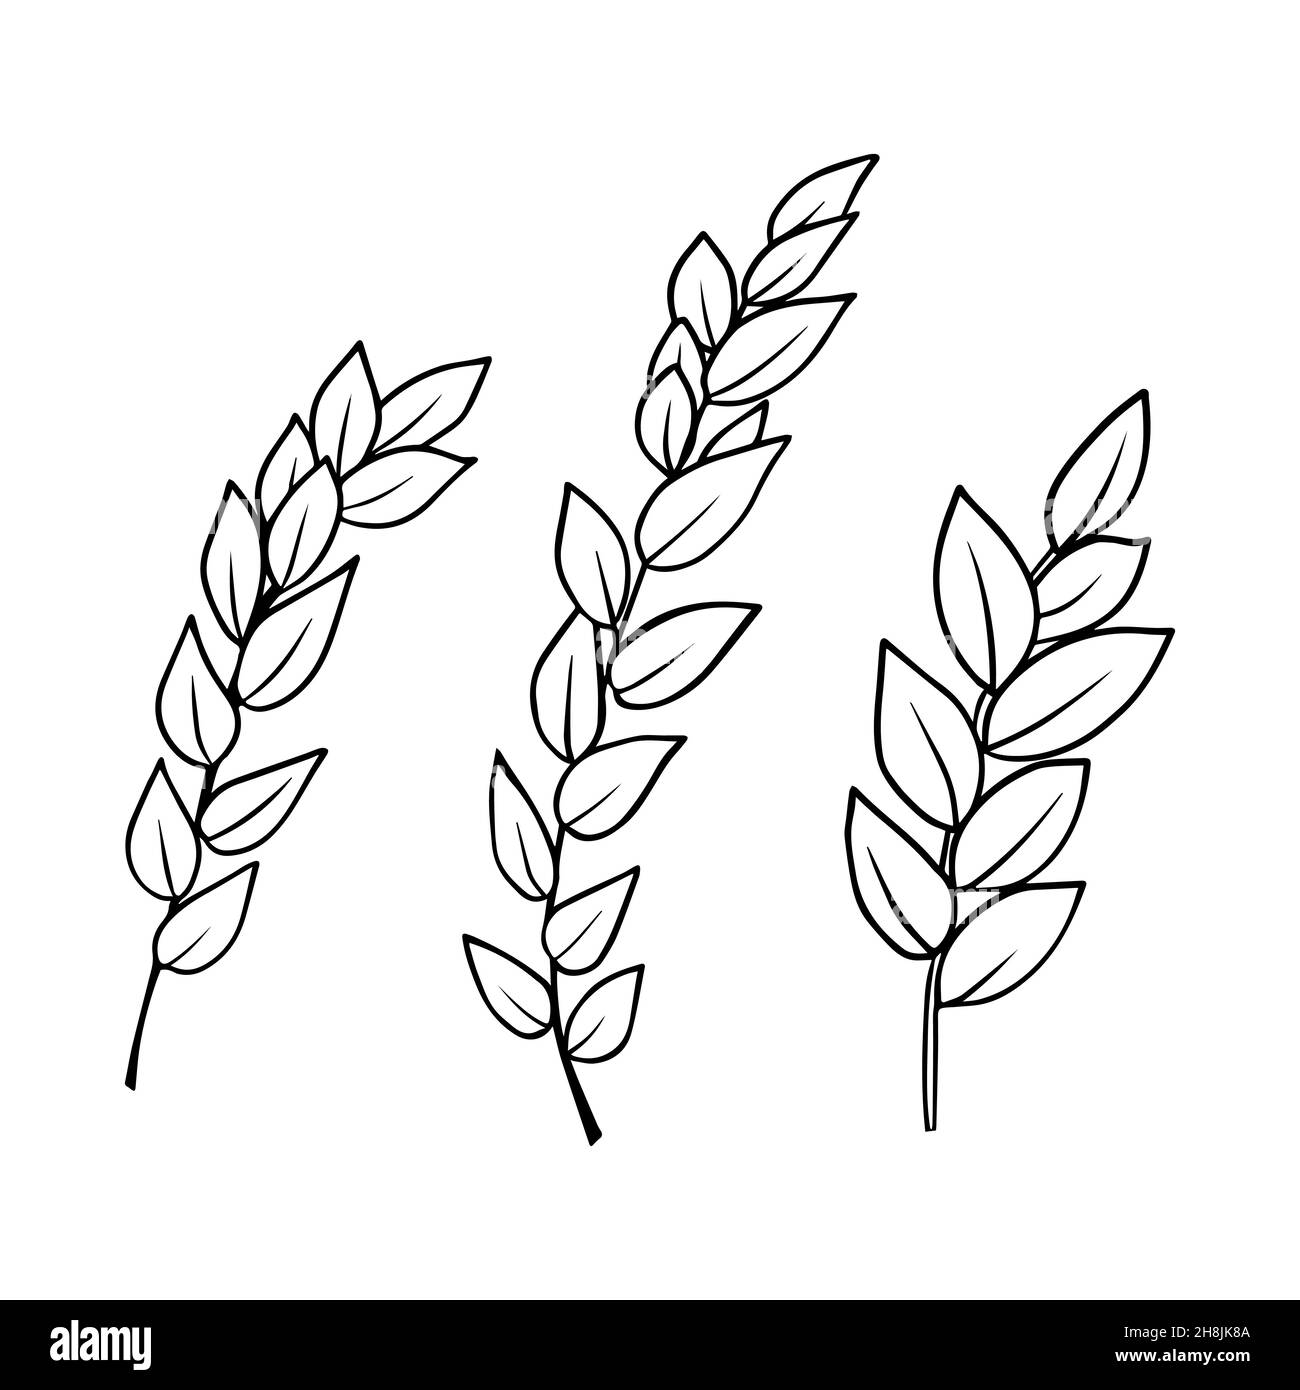 Conjunto de dibujos de contorno de una rama con láminas. Clipart vectorial aislada. Diseño botánico monocroma mínimo dibujado a mano. Ilustración del Vector